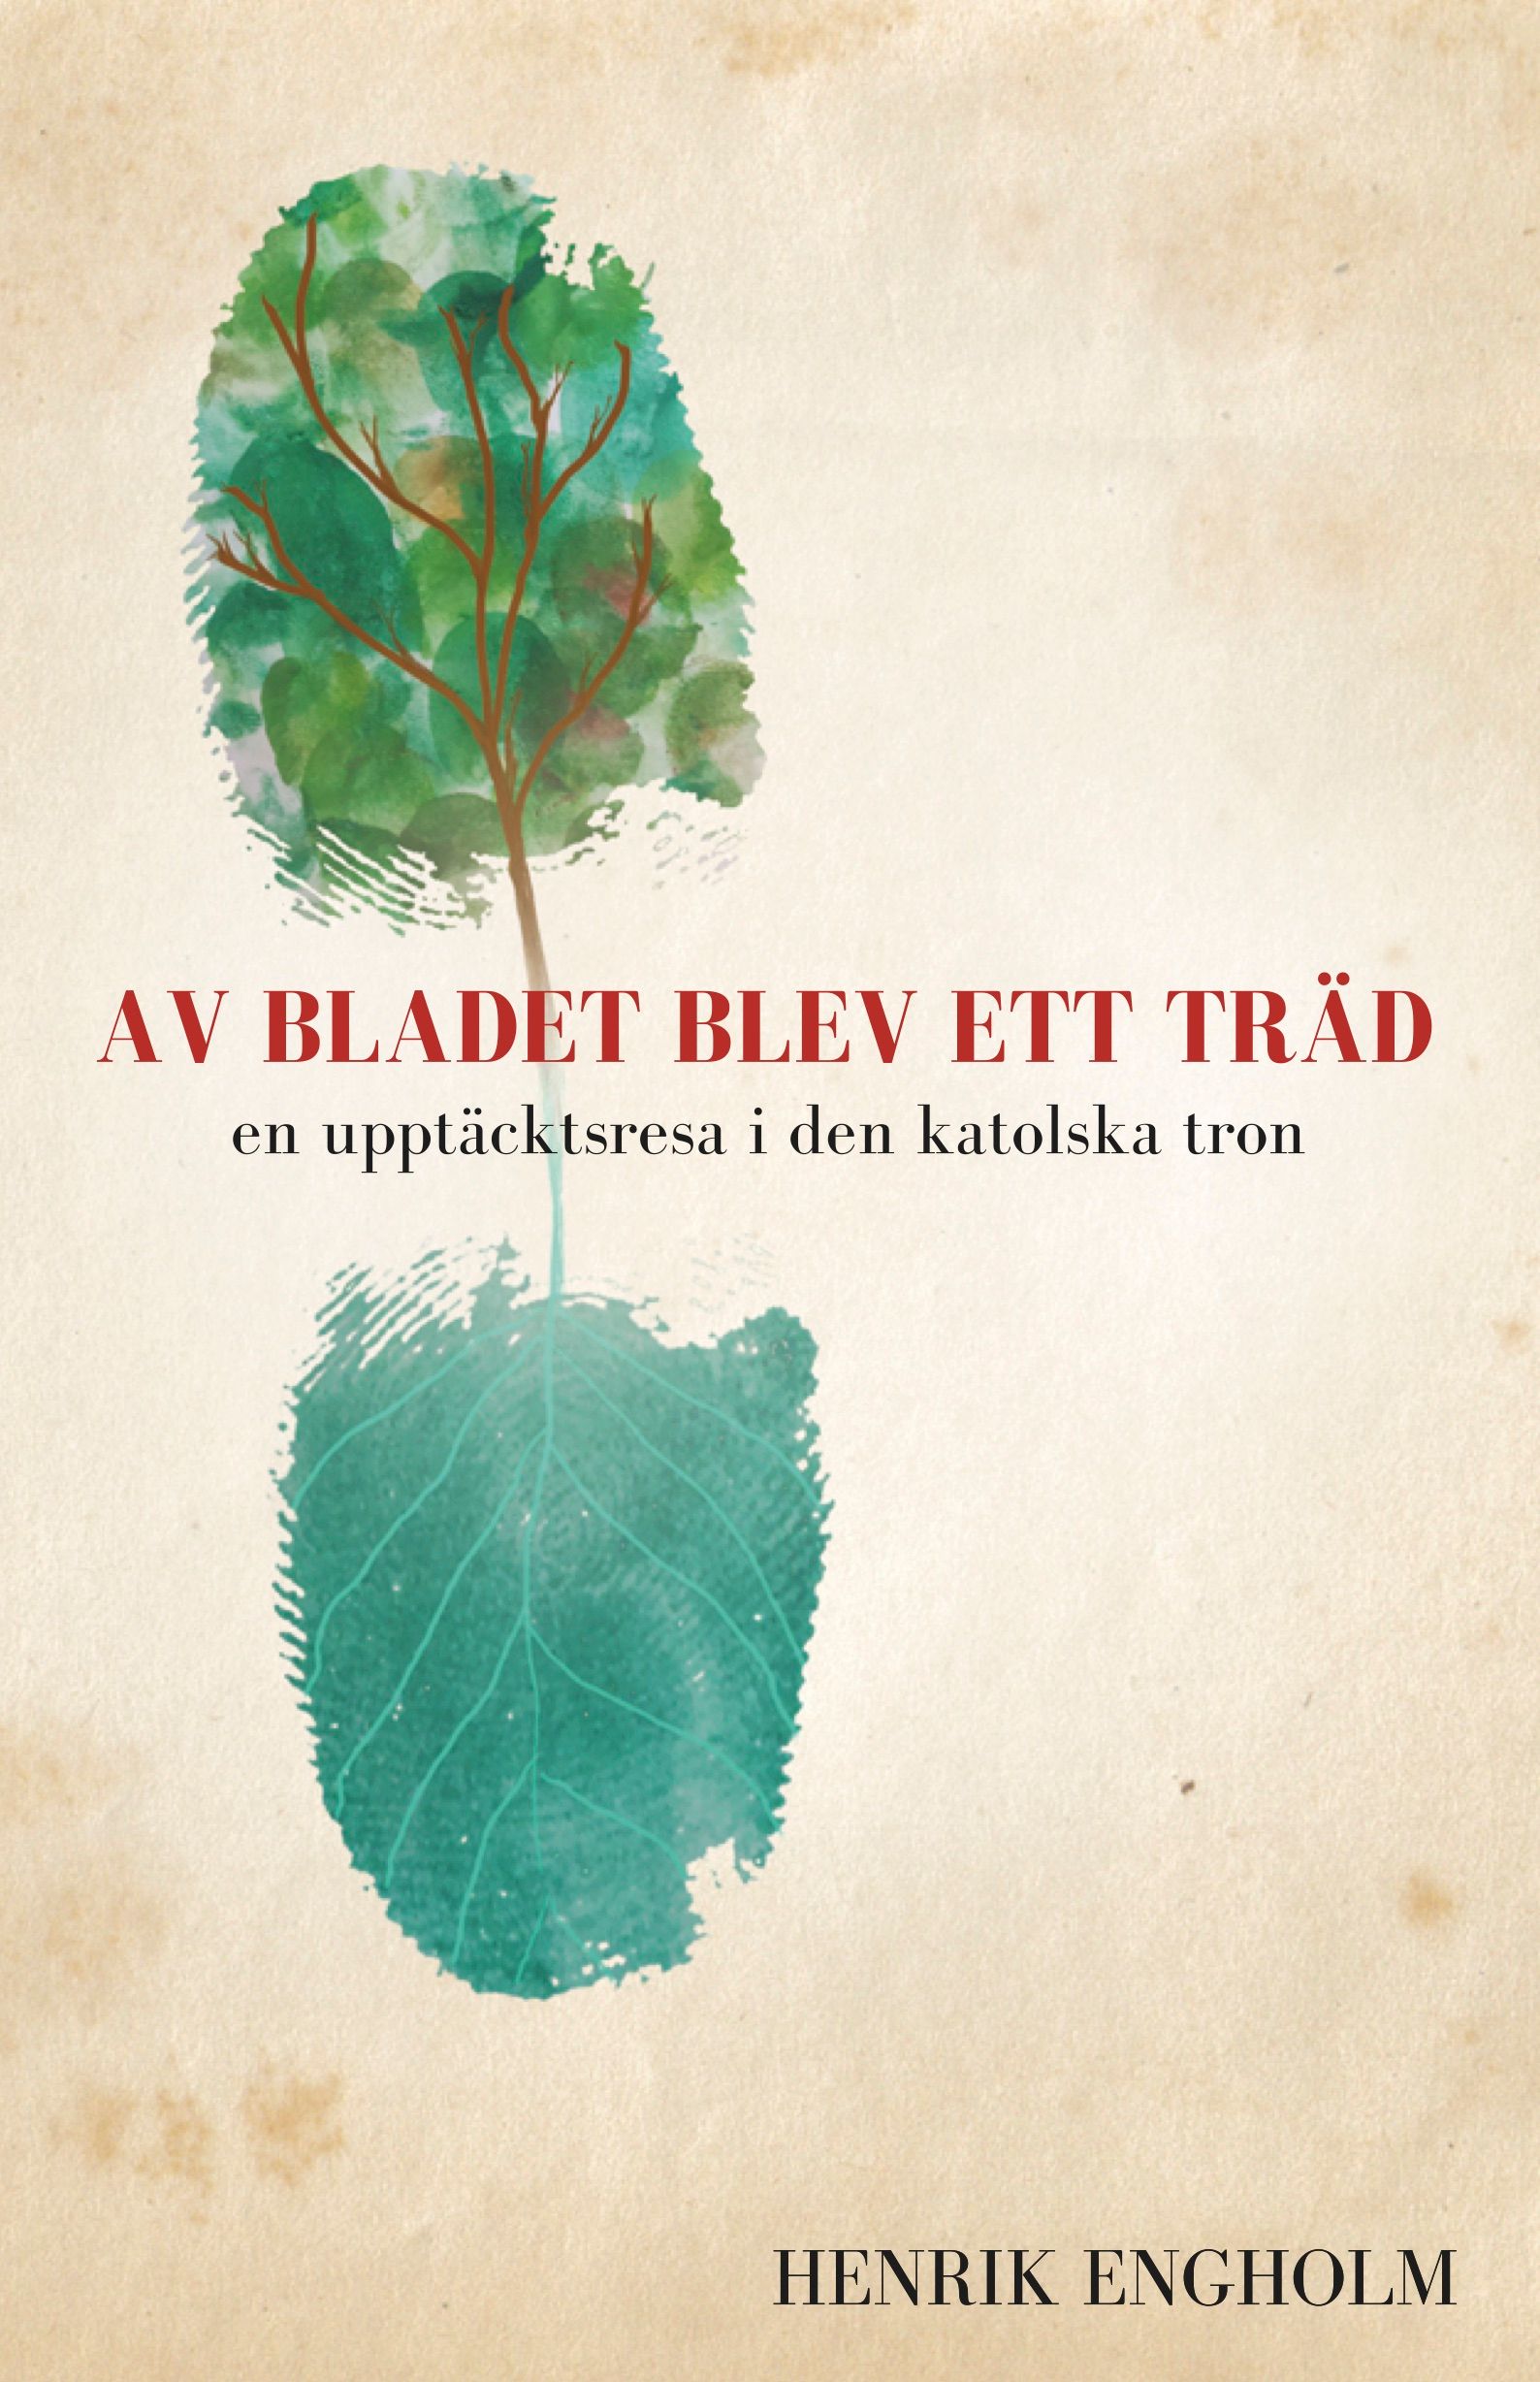 Av bladet blev ett träd, e-bok av Henrik Engholm